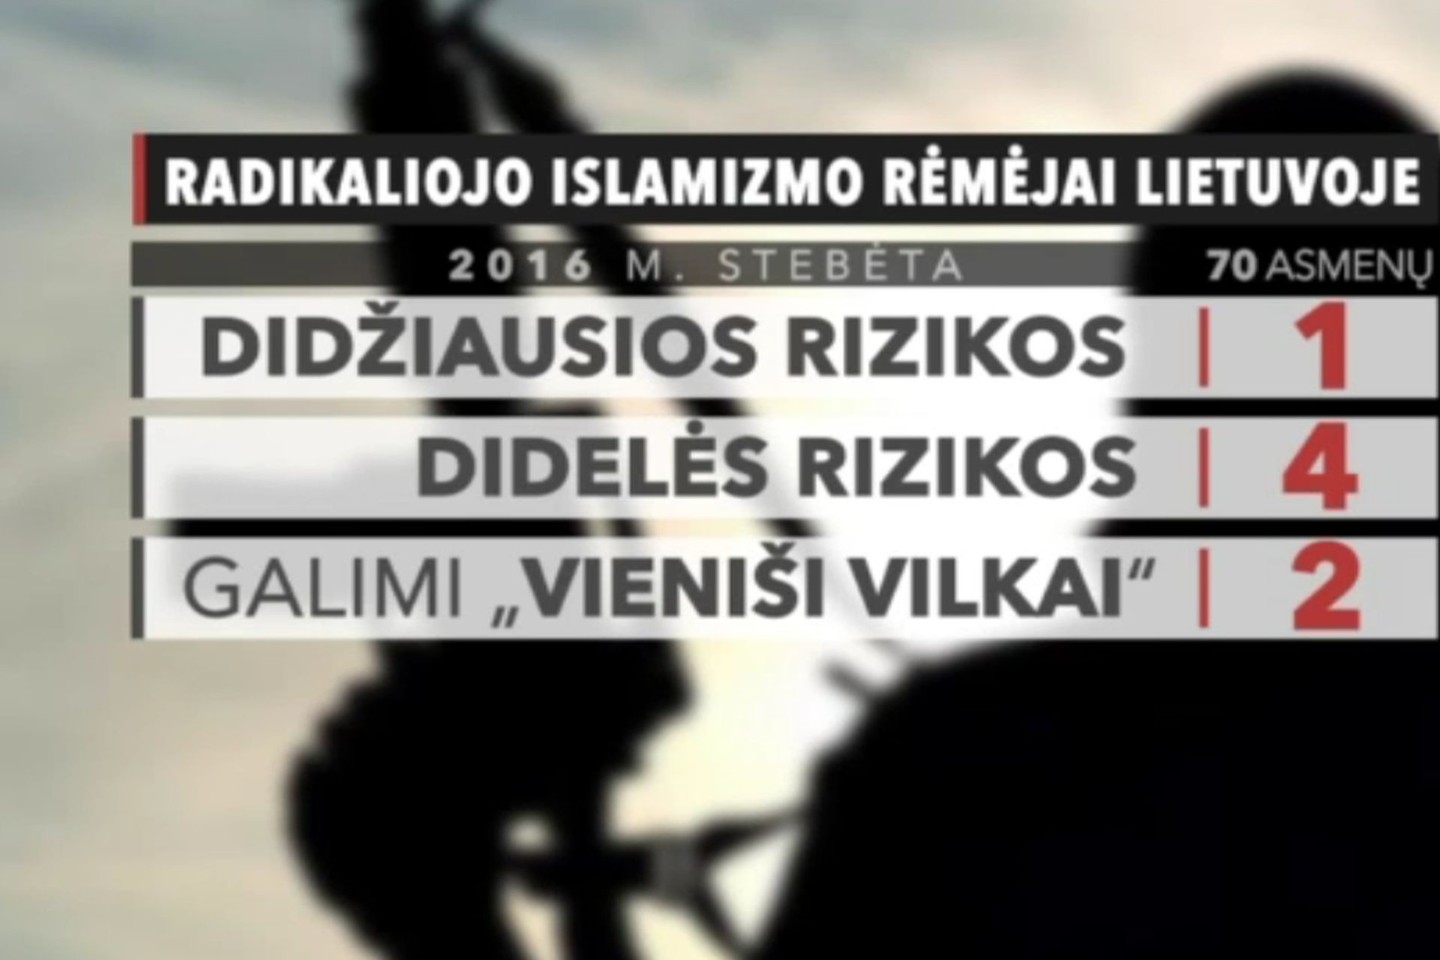 Pernai žvalgyba stebėjo 70 radikalių islamo pažiūrų Lietuvos piliečių ir čia gyvenančių užsieniečių, kurie gali kelti terorizmo grėsmę. Sulaikytas čečėnas priskiriamas rizikingiausiai grupei.<br>Stop kadras